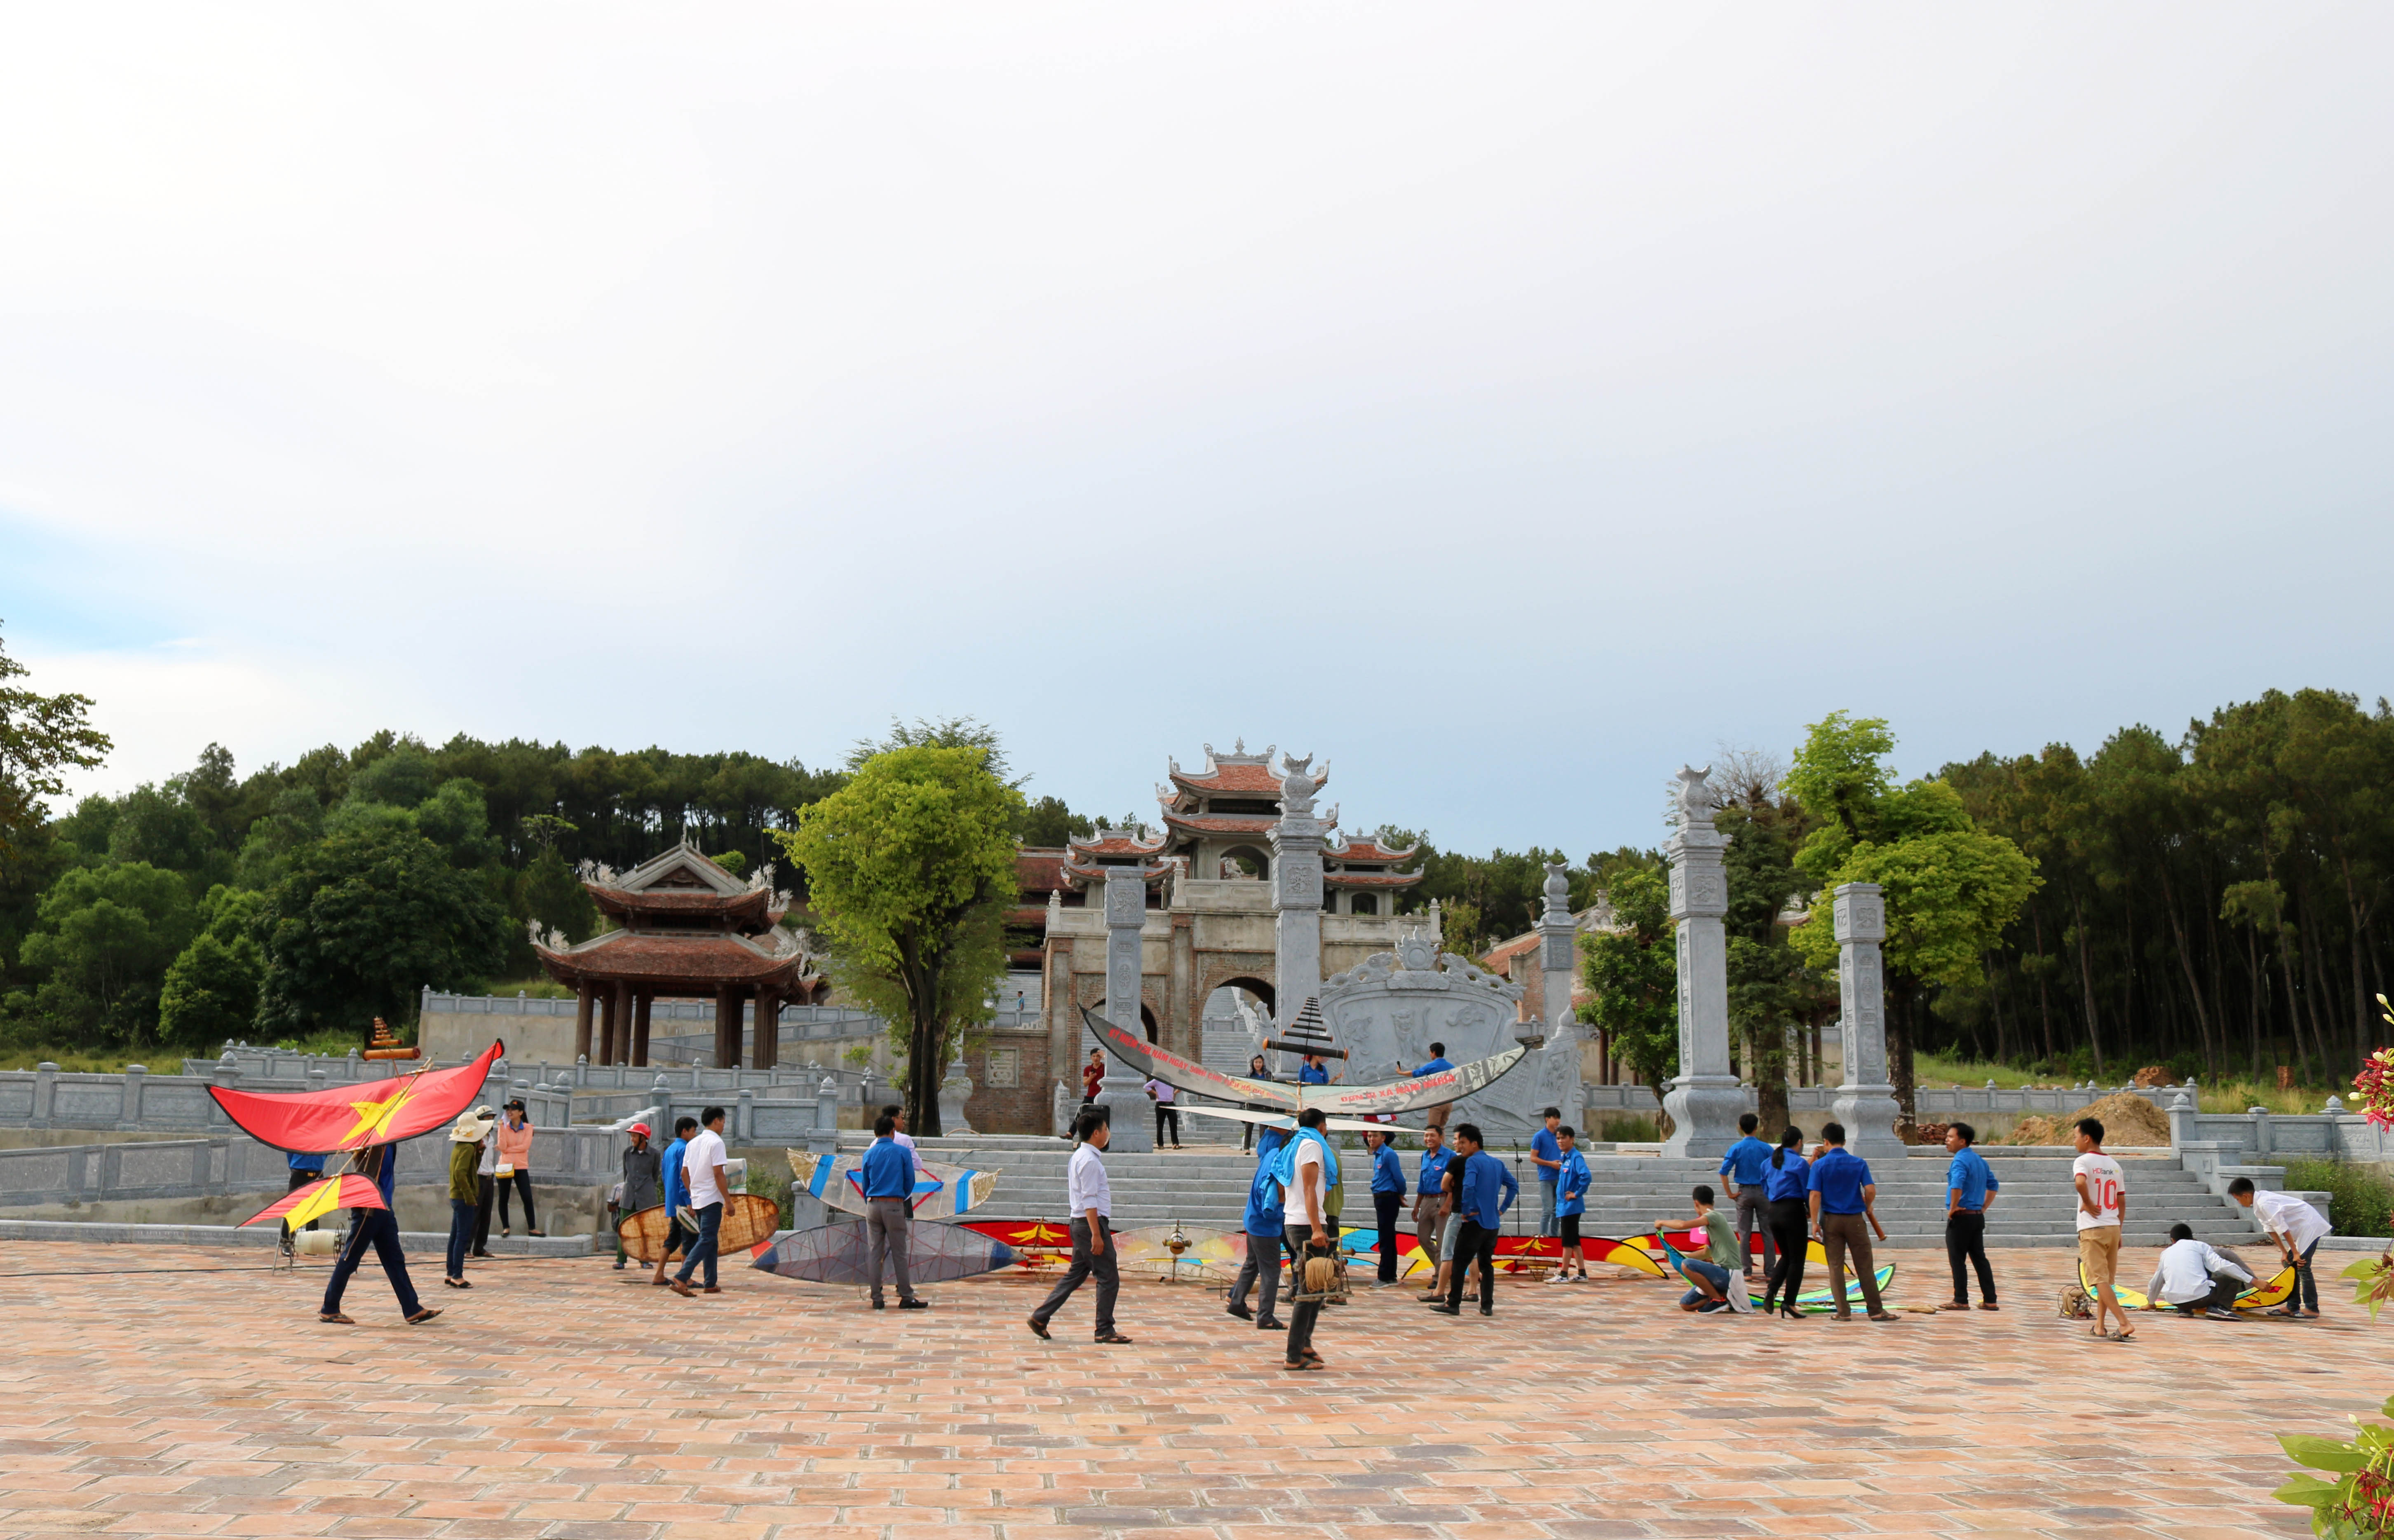 1.Hội thả diều được tổ chức trước đền thờ bác Hồ trên núi Chung. Ảnh: Huy Thư